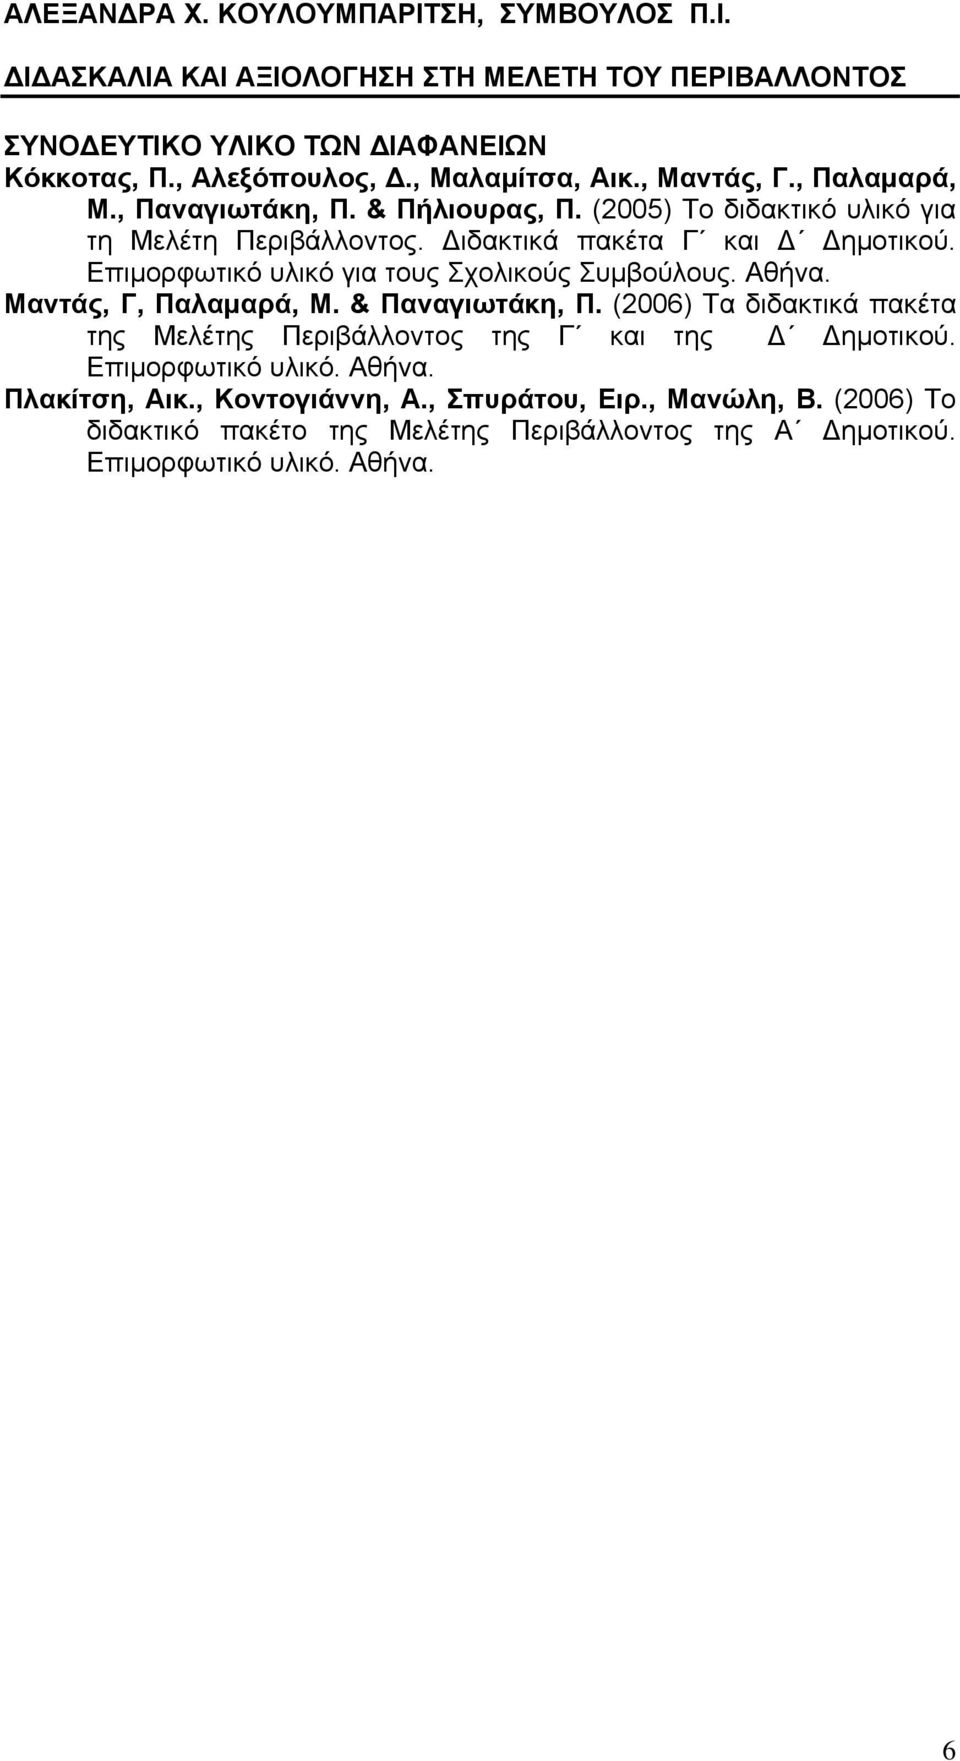 Αθήνα. Μαντάς, Γ, Παλαμαρά, Μ. & Παναγιωτάκη, Π. (2006) Τα διδακτικά πακέτα της Μελέτης Περιβάλλοντος της Γ και της Δ Δημοτικού.